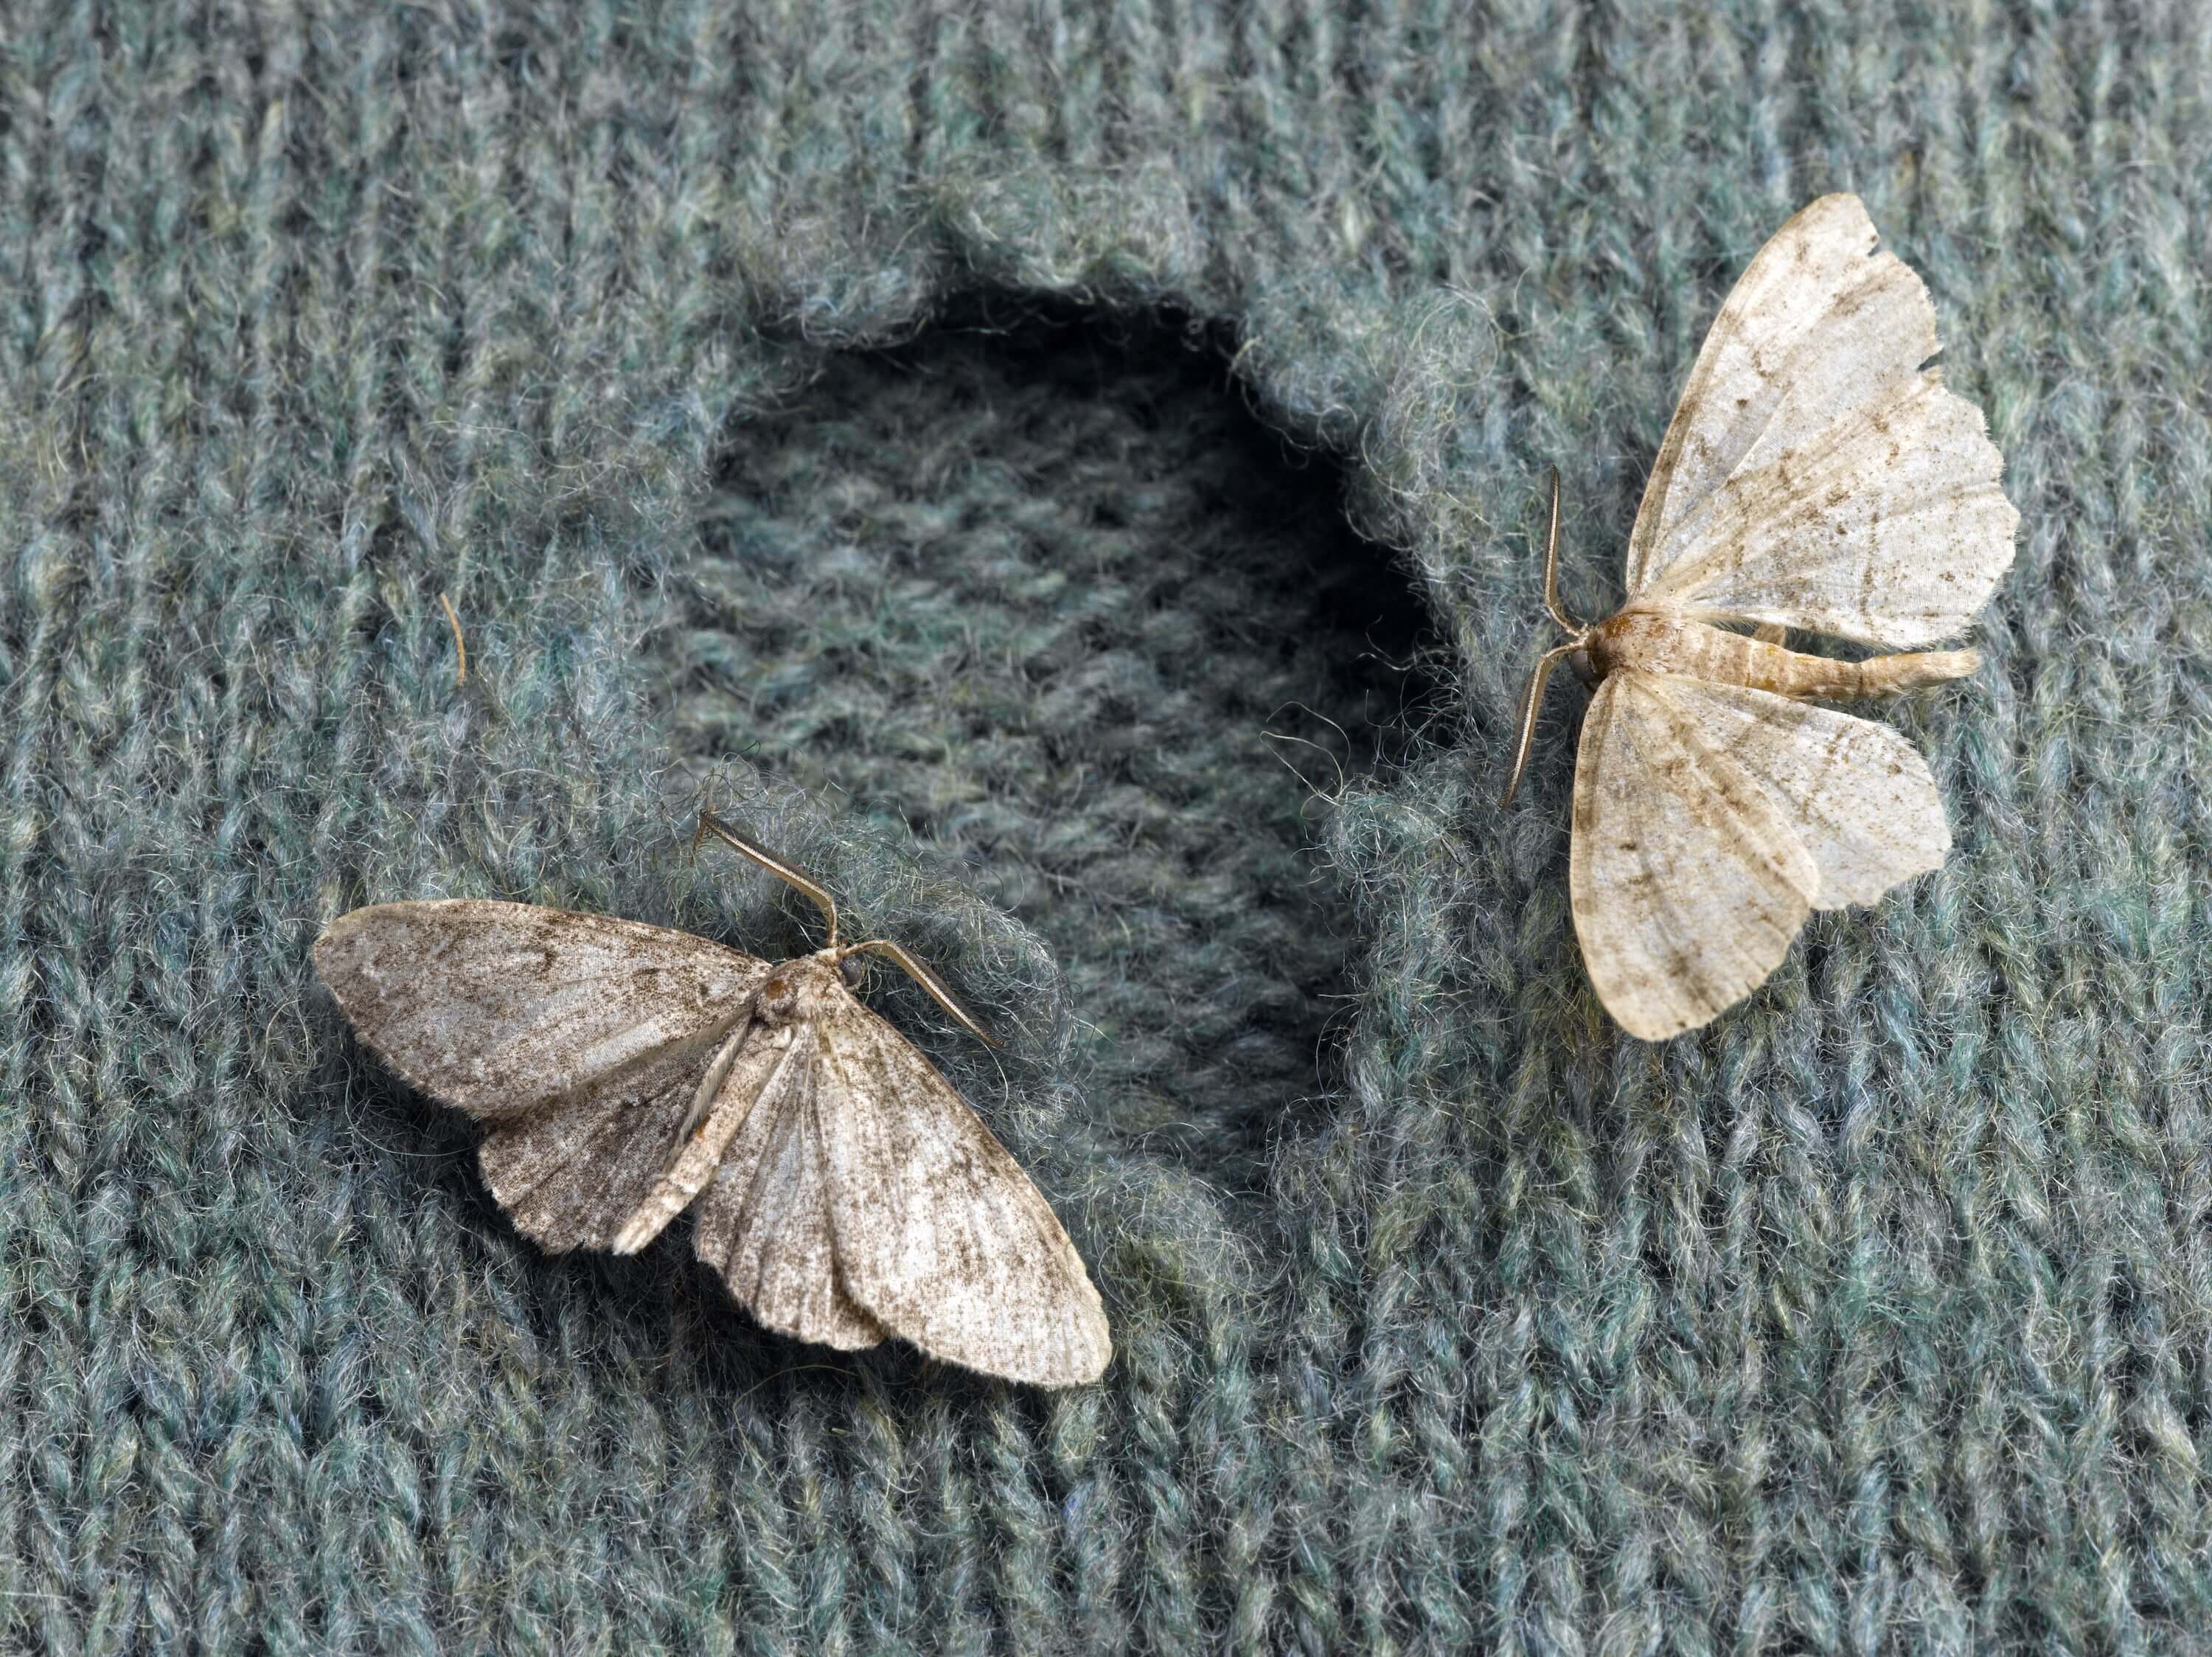 https://www.plcclosets.com/_cms/resources/BlogPics/moths-destroy-clothes.jpg